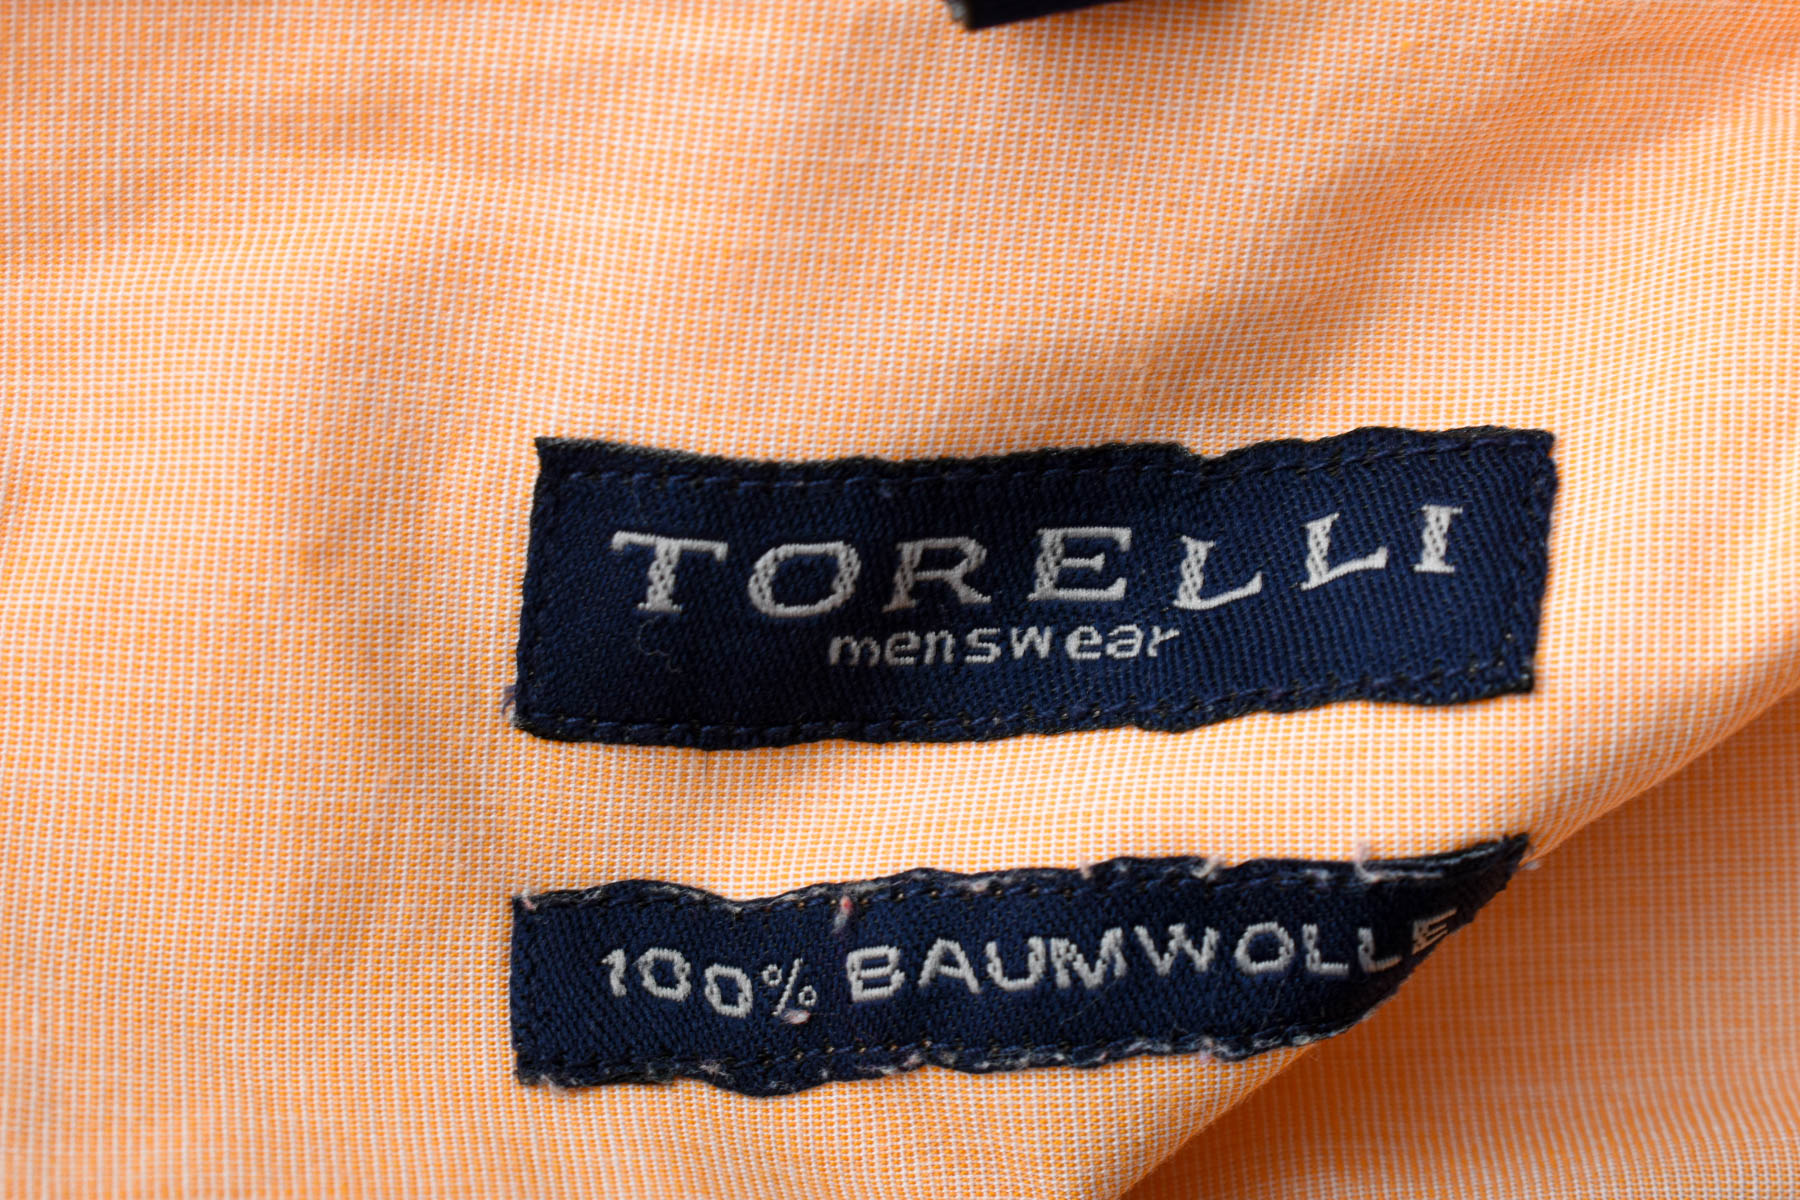 Ανδρικό πουκάμισο - Torelli - 2